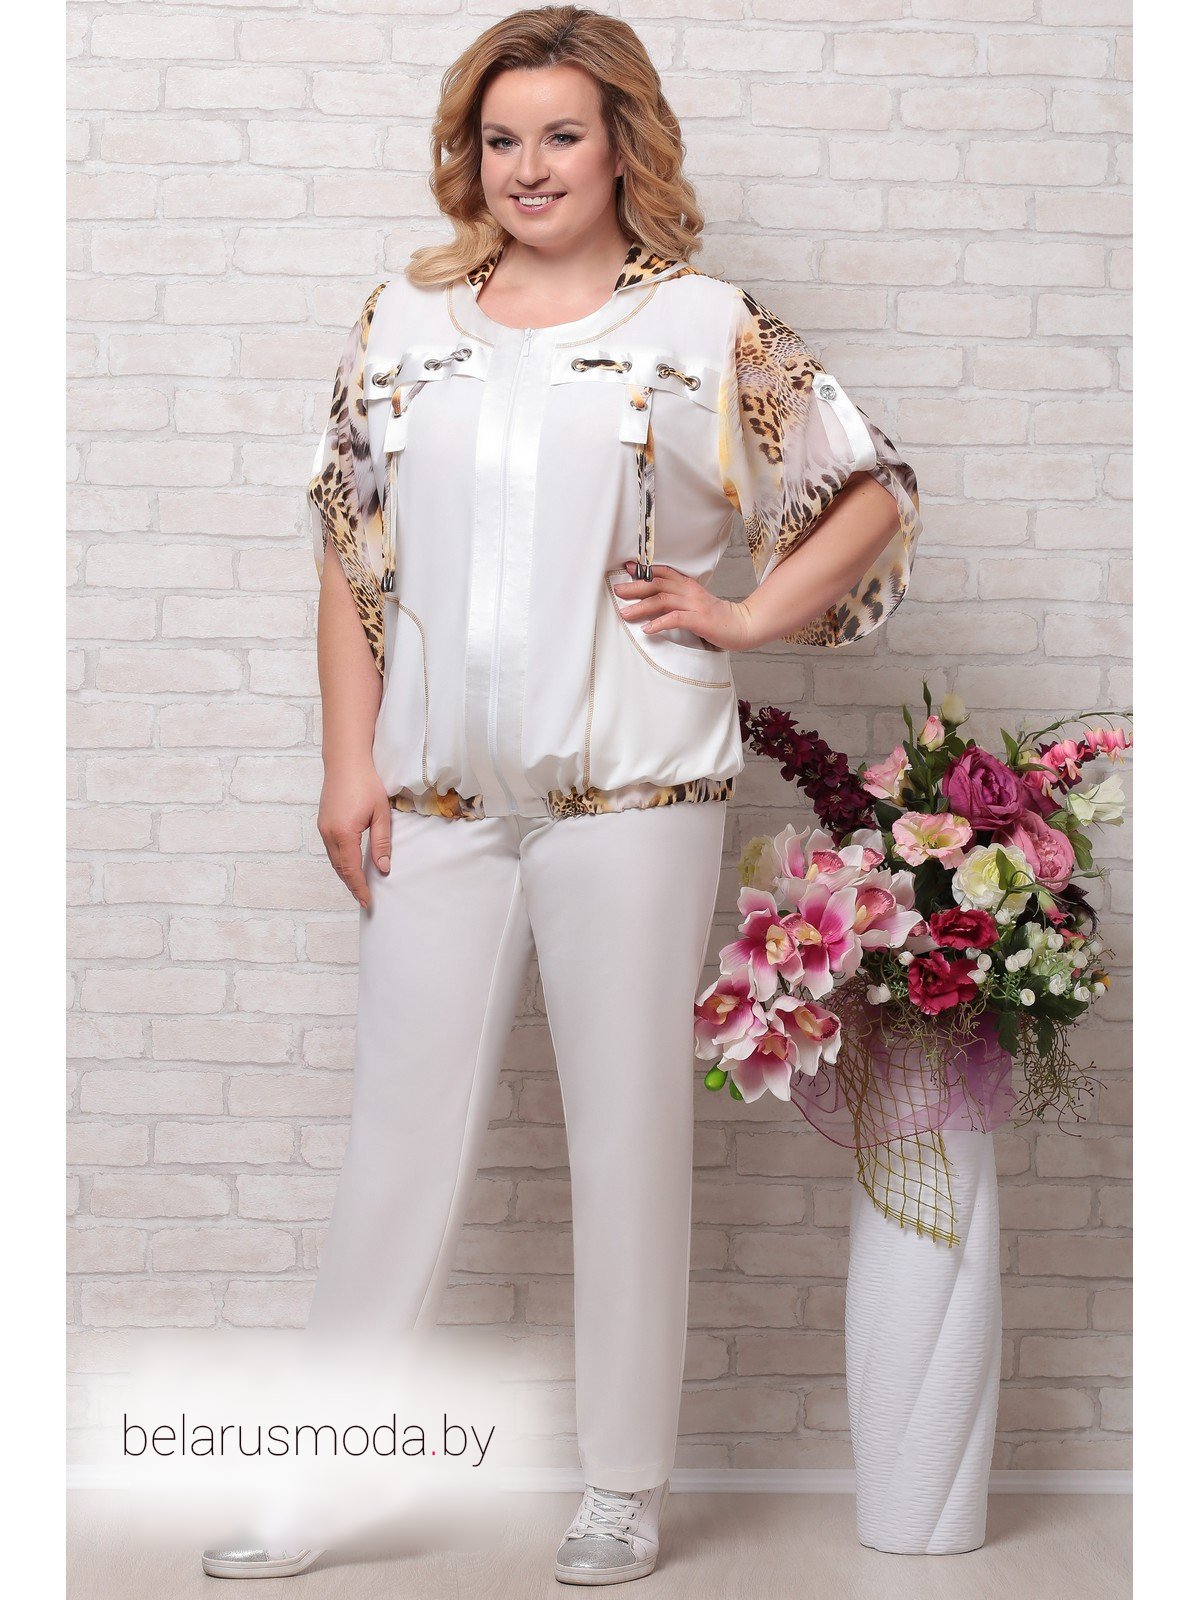 Нарядные женские костюмы для полных. Комплект Aira Style. Комплект брючный Aira Style. Белорусские брючные костюмы Aira Style 650. Костюм Aira Style модель 764.